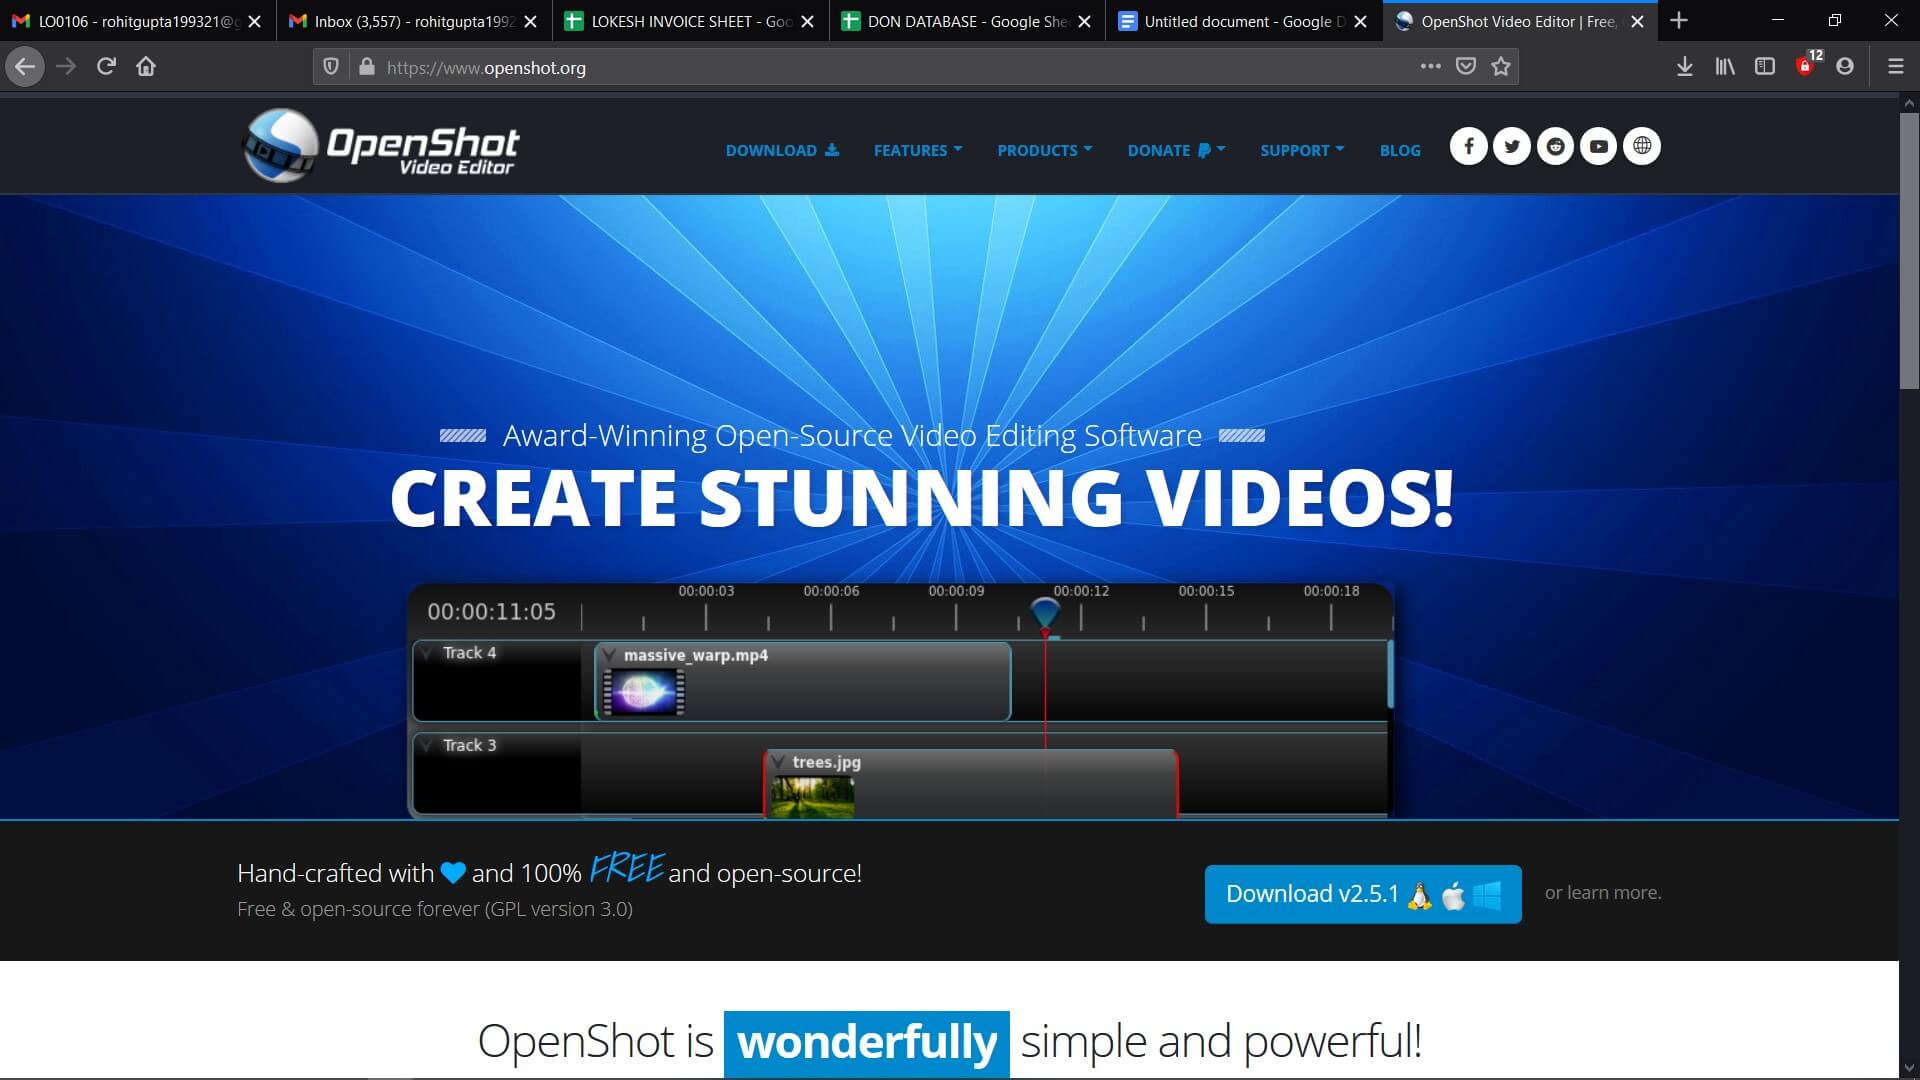 kostenlose tiktok video editor für windows, mac und linux - openshot